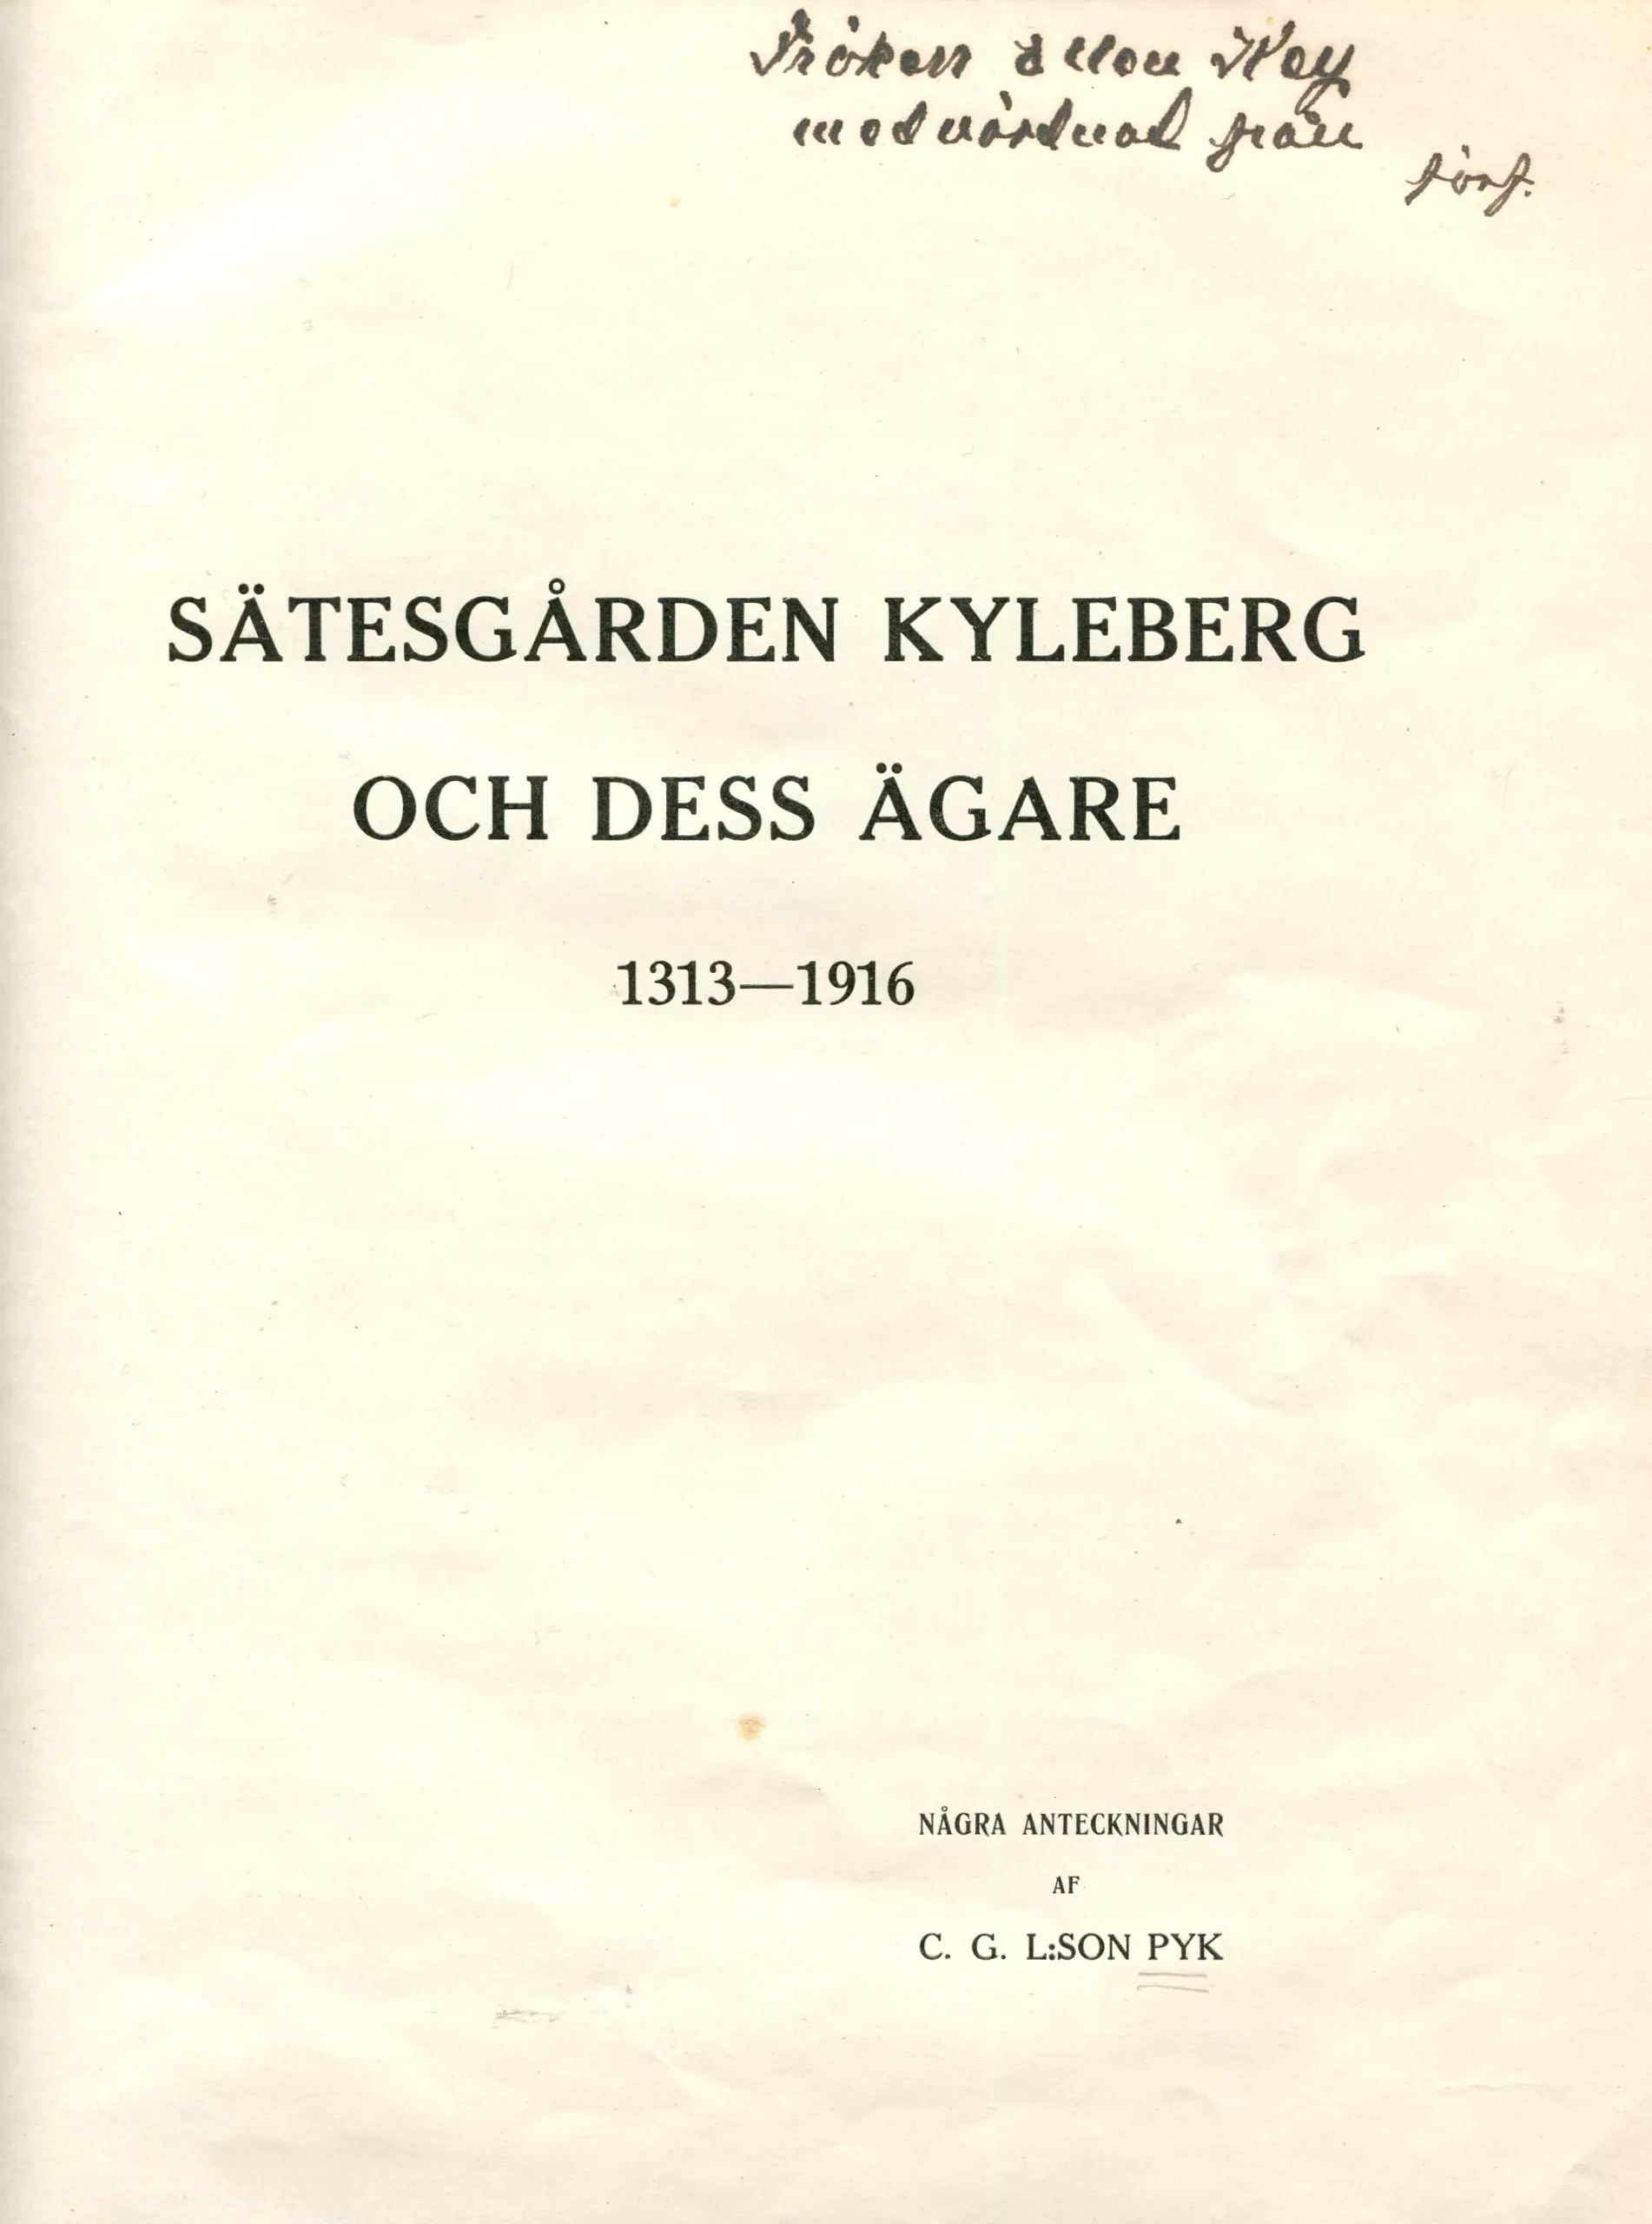 Sätesgården Kyleberg , Linköping 1916